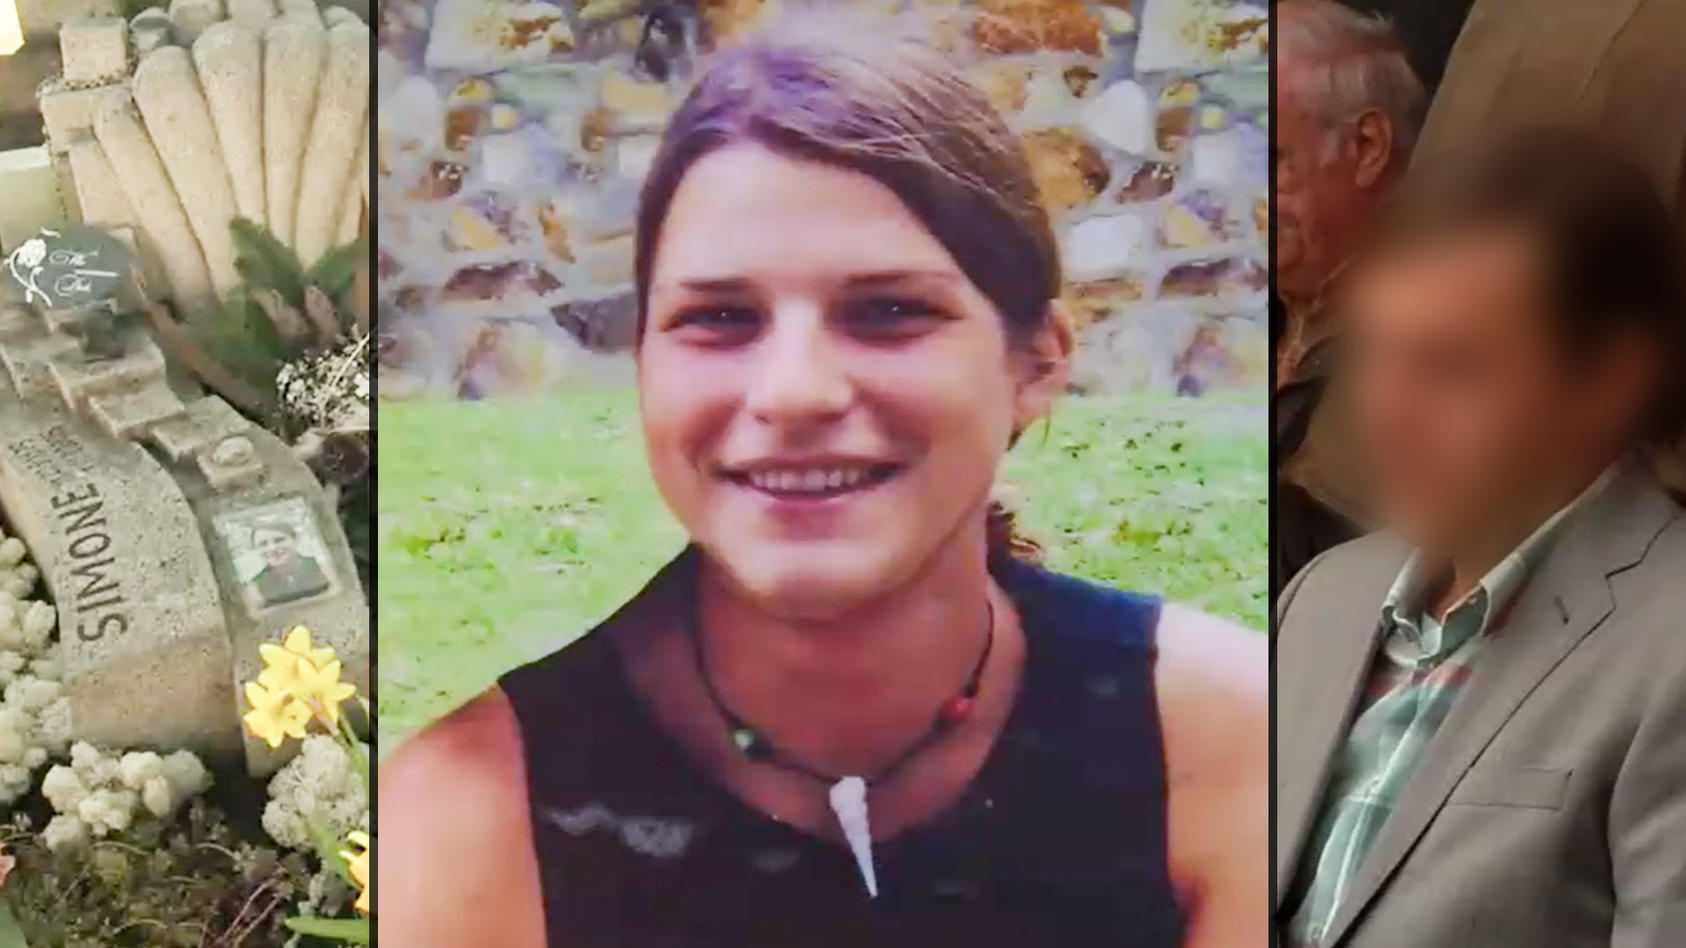 Simone Strobel wurde 2005 tot in Australien aufgefunden. Ihr damaliger Freund Tobias M. wurde verhaftet, kam jedoch kurze Zeit später wieder auf freien Fuß.